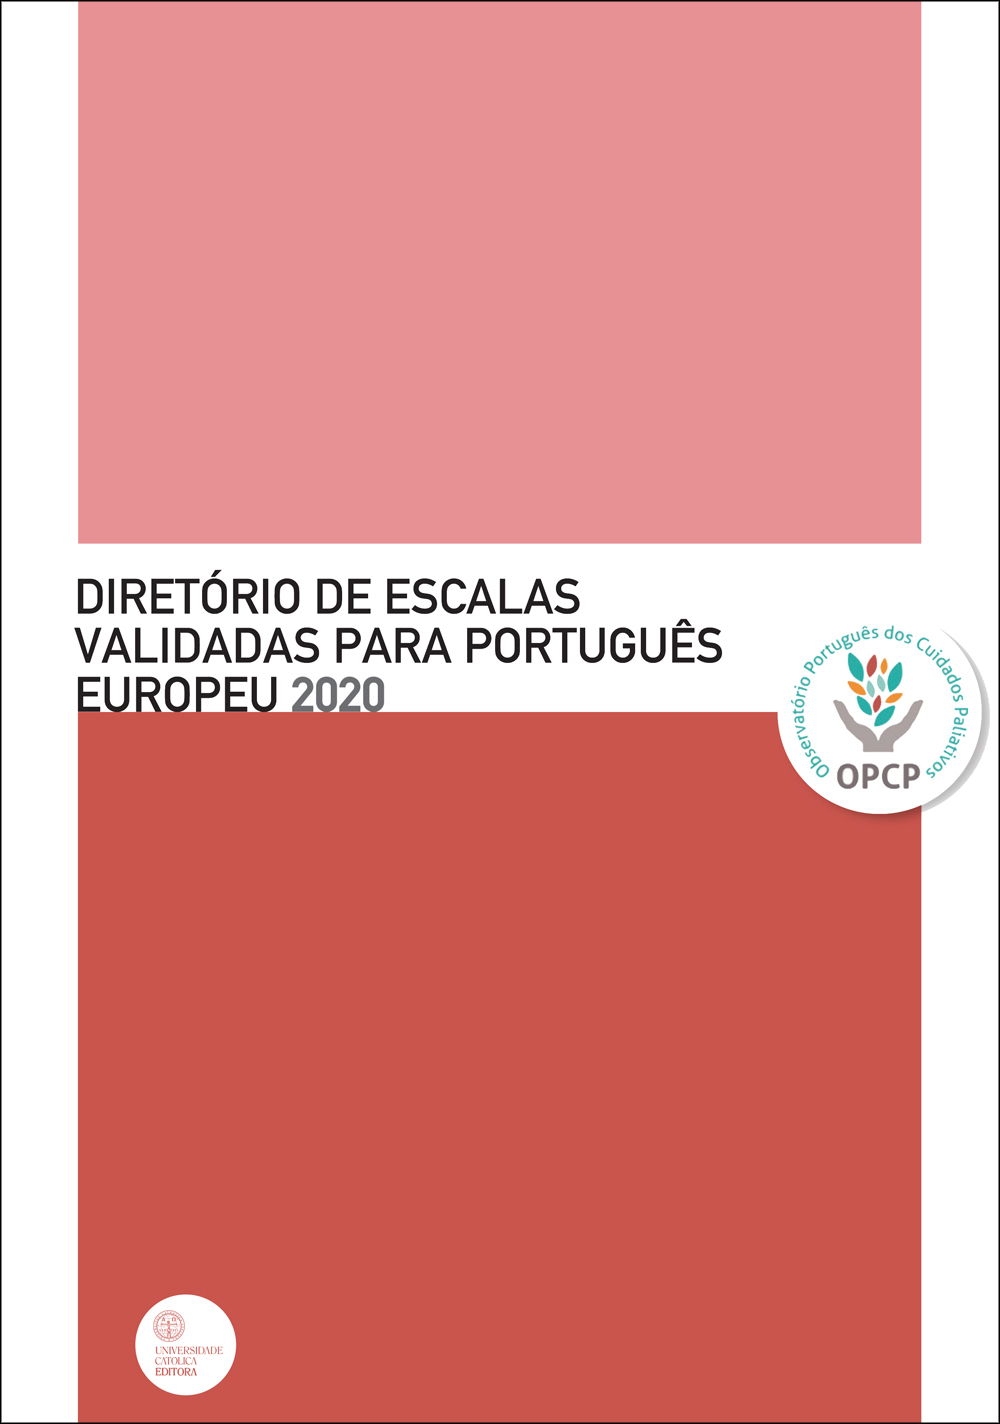 OPCP DIRETÓRIO DE ESCALAS 2020 - Validadas para português europeu